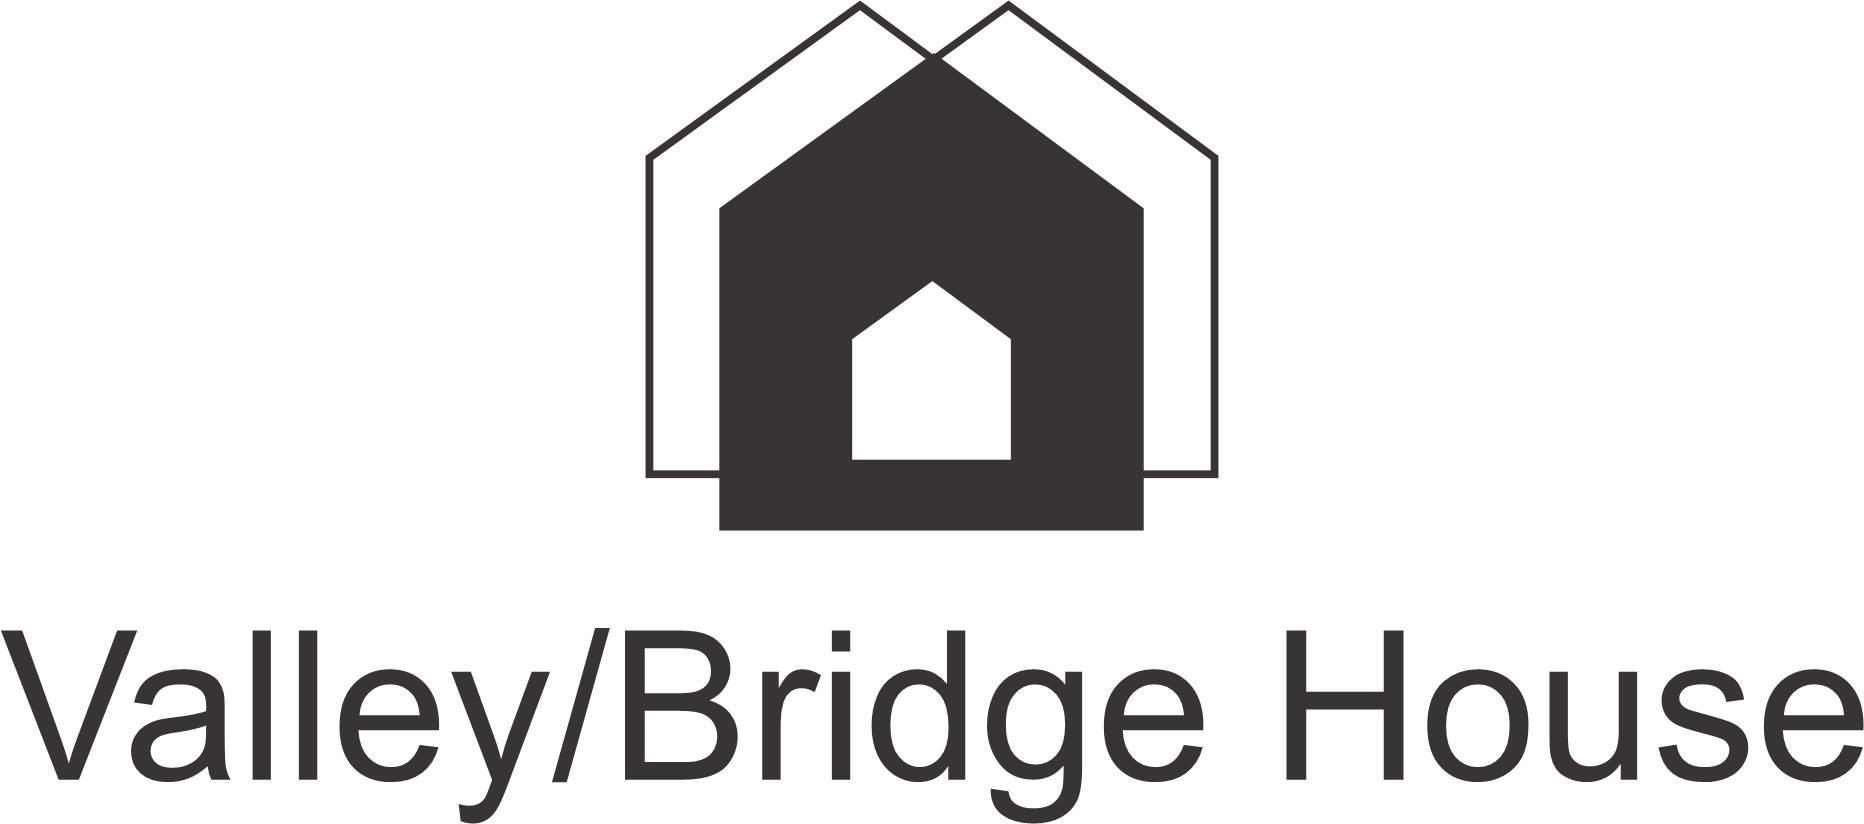 ValleyBridge House (Copy)